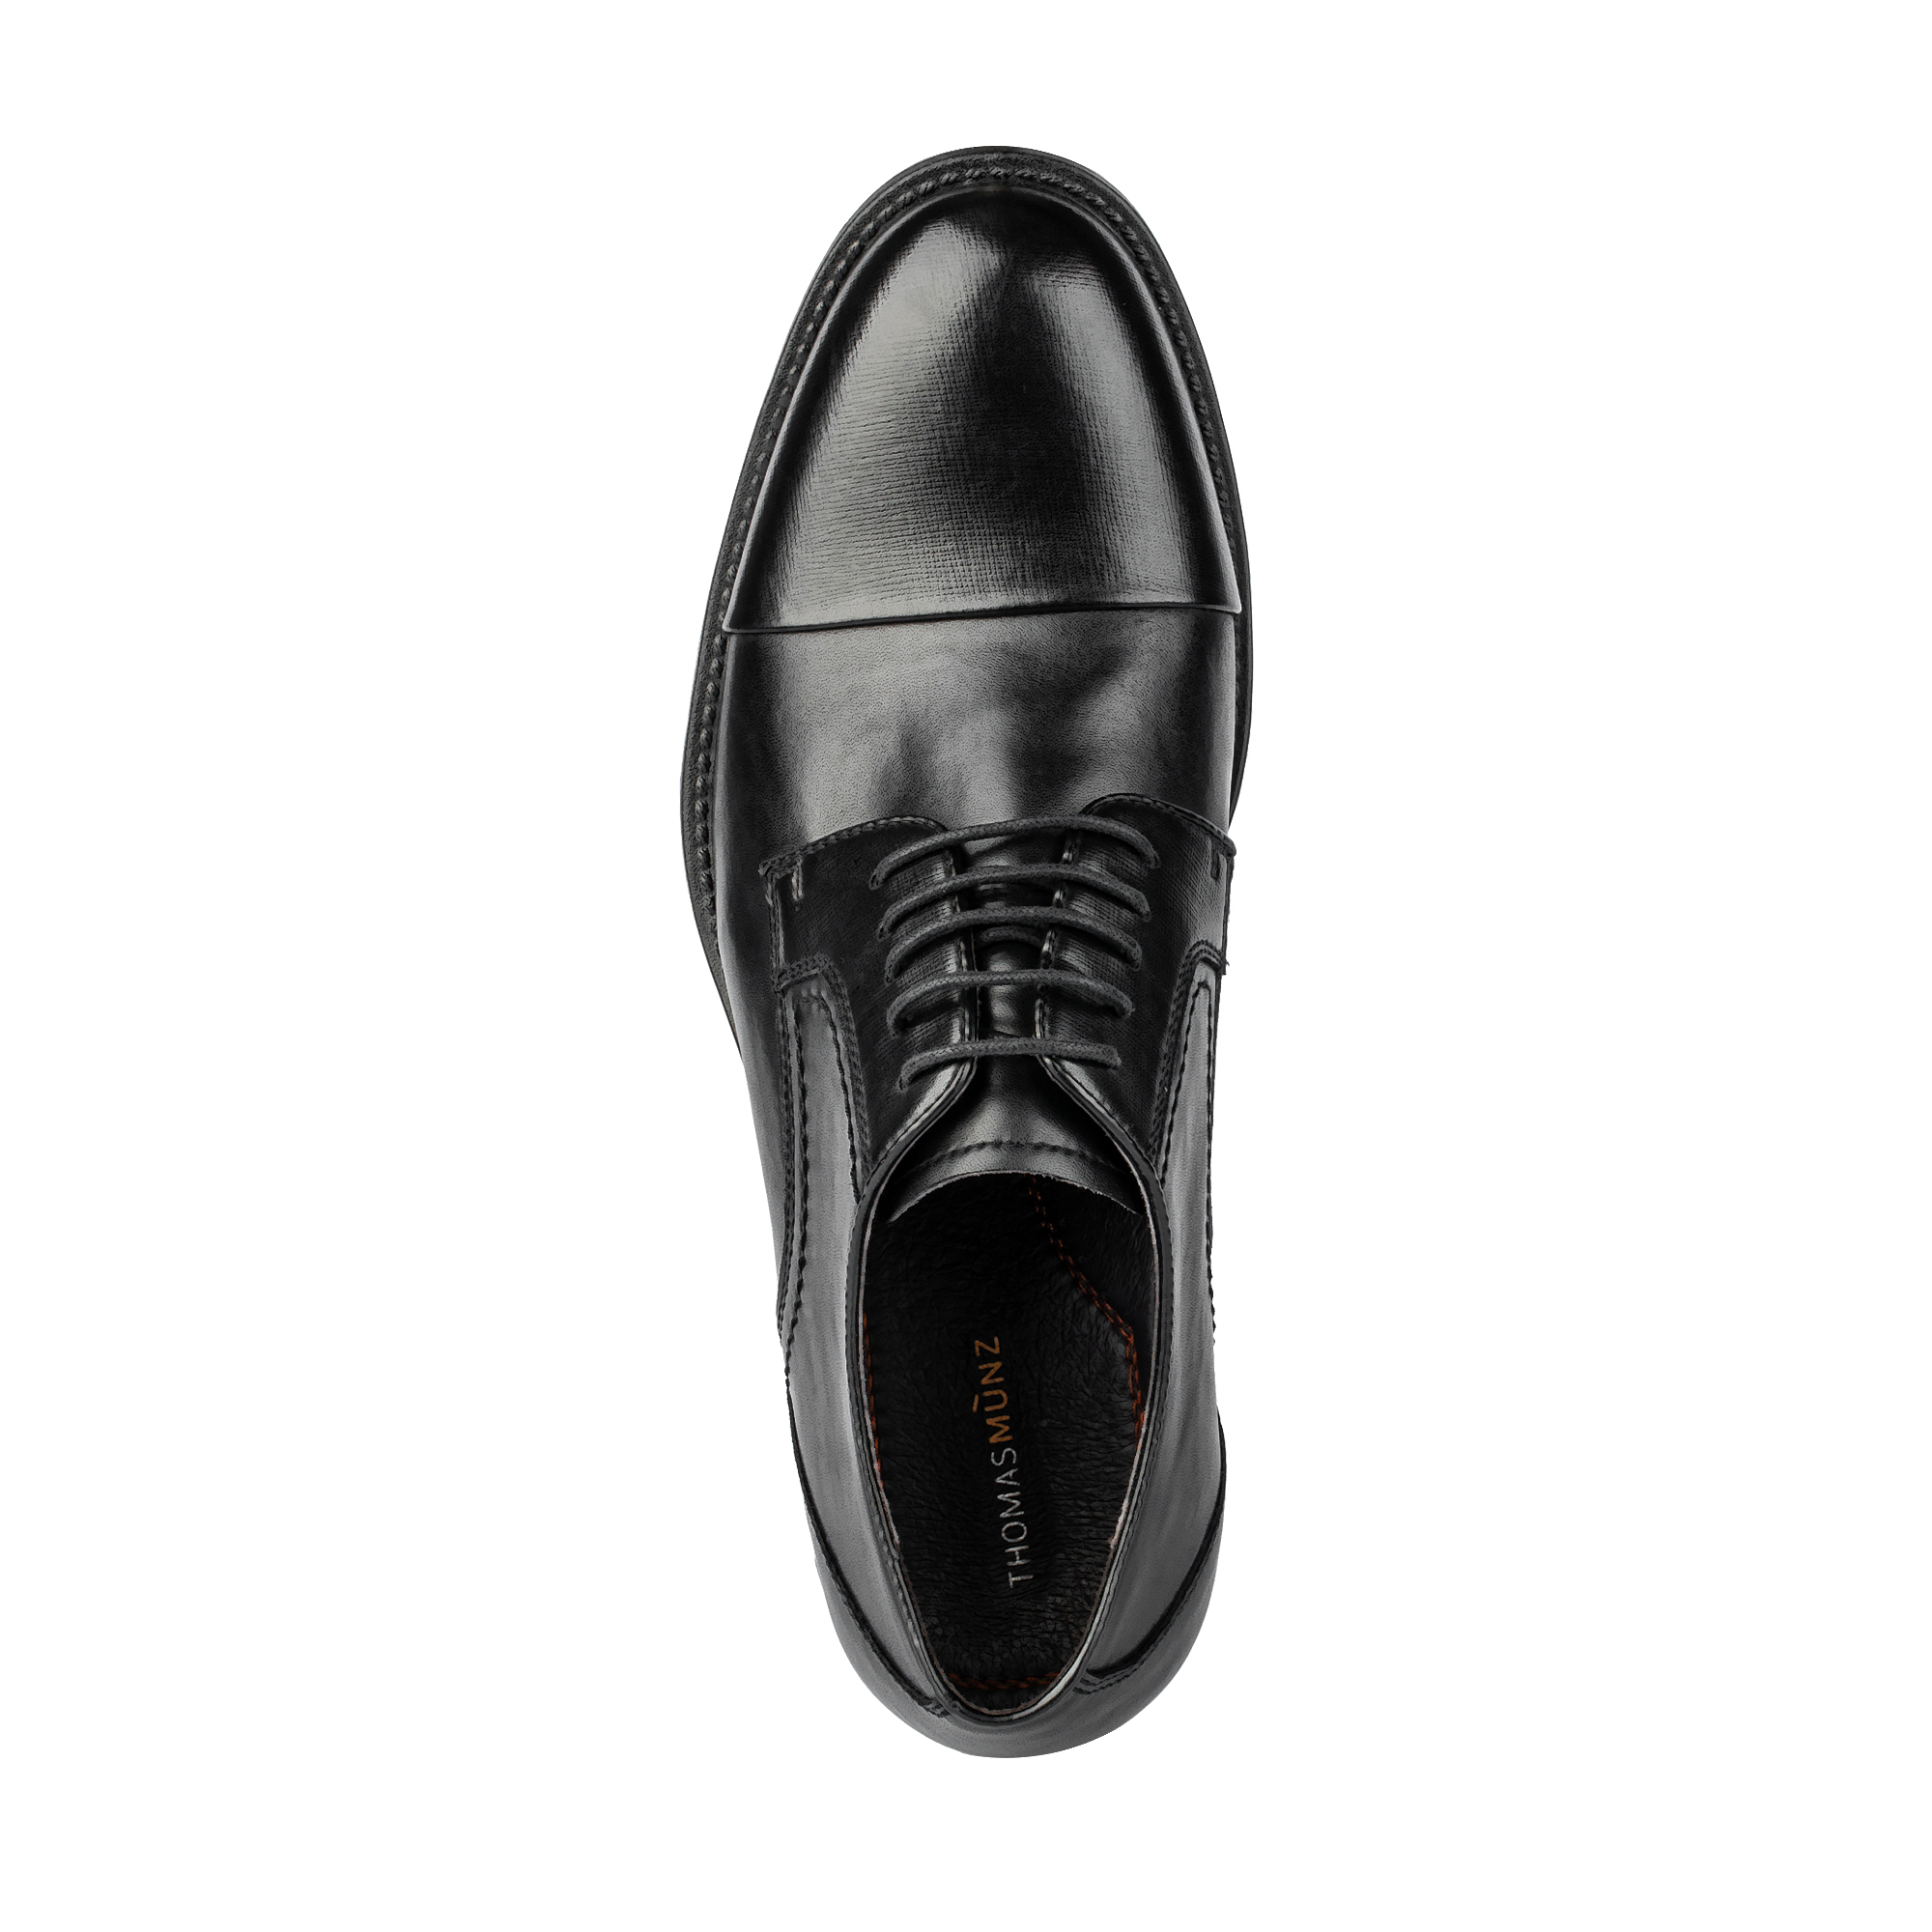 Туфли/полуботинки Thomas Munz 073-750F-1602, цвет черный, размер 43 - фото 5